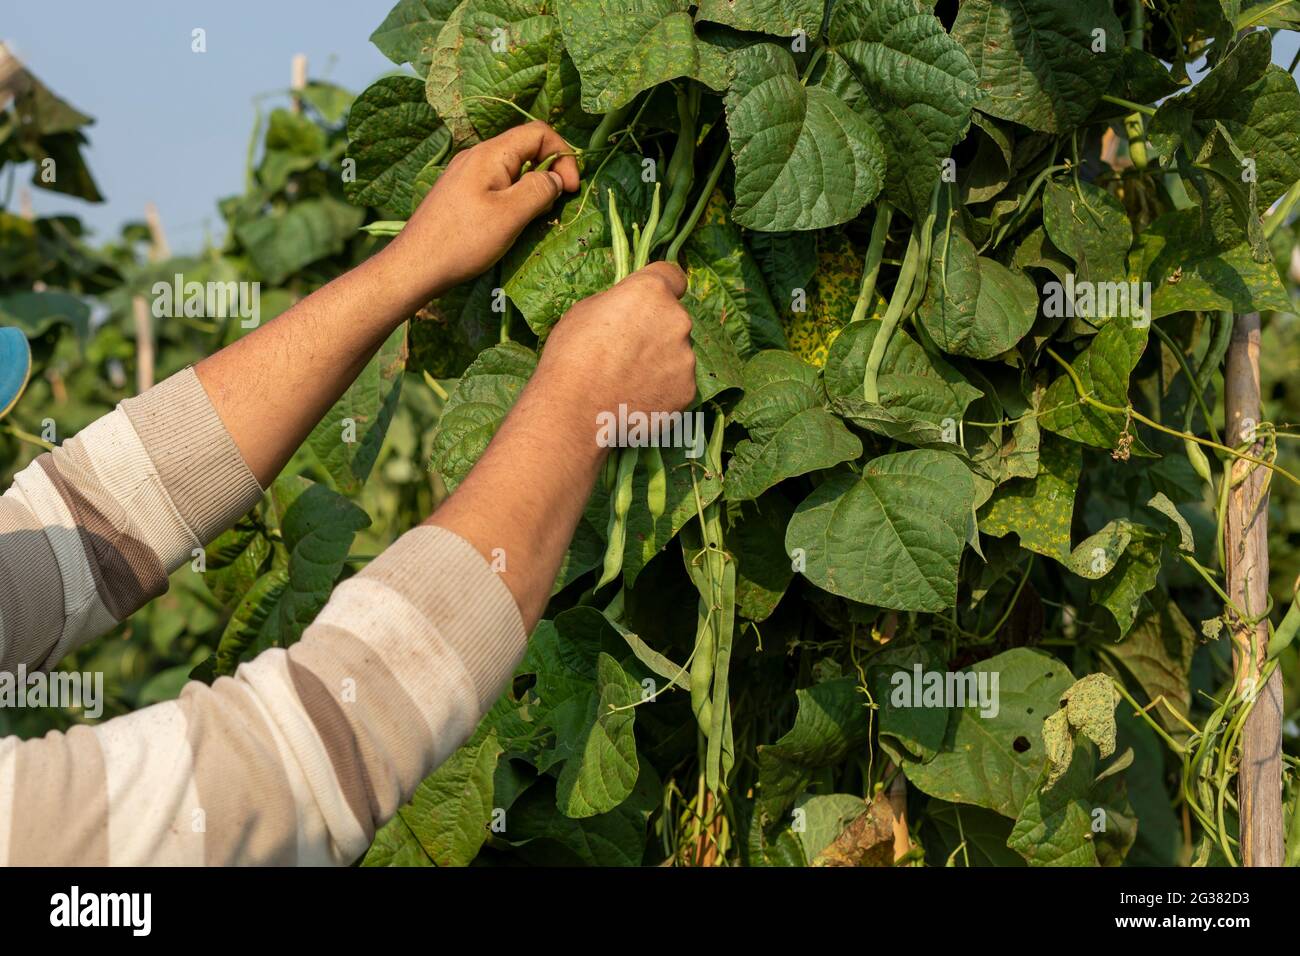 fermier cueillette à la main de l'haricot sur le potager. Concept d'agriculture biologique Banque D'Images